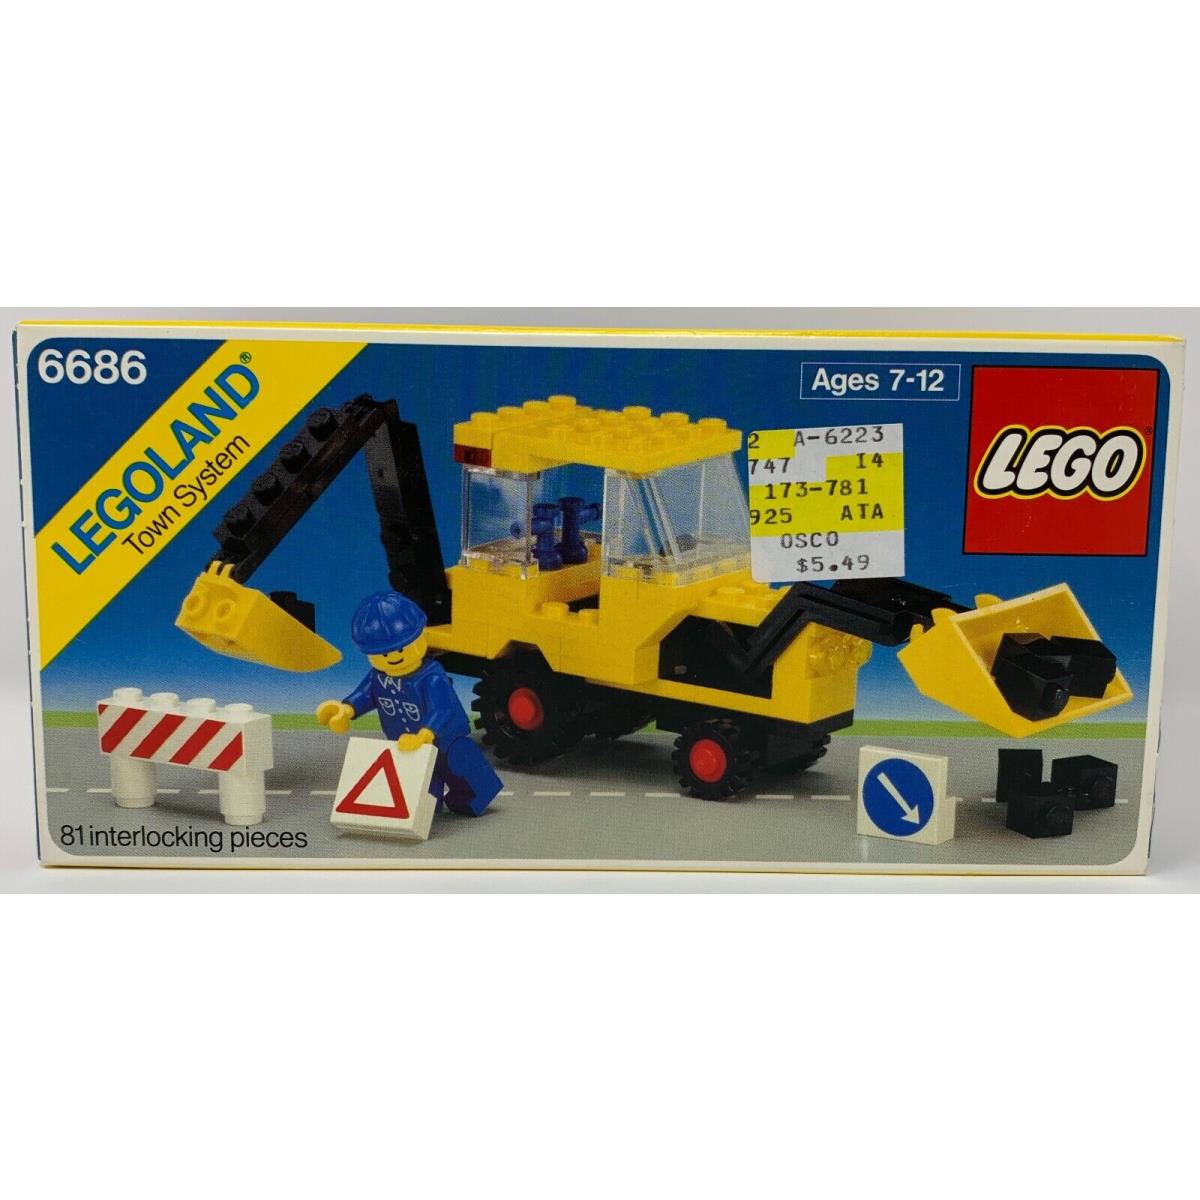 Lego 6686 Backhoe 1984